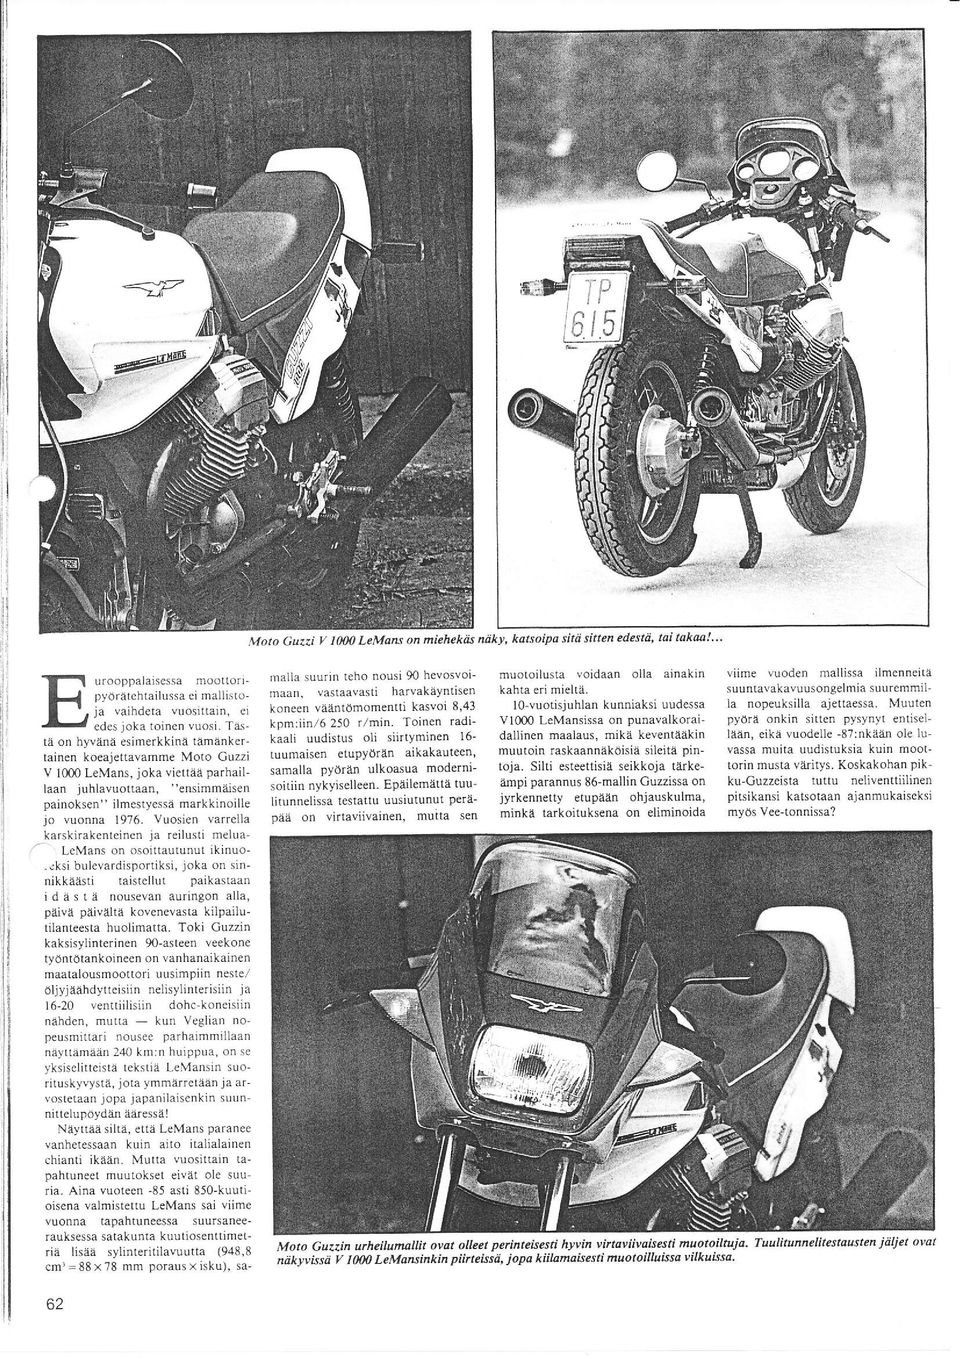 rnånkertainen koeajettavamme Moto Guzzi V 1000 LeMans, joka viettäå parhaillaan juhlavuottaan, "ensimmäisen painoksen" ilmestyessa markkinoille jo vuonna 1976- Vuosien vafrella karskirakenteincn ja